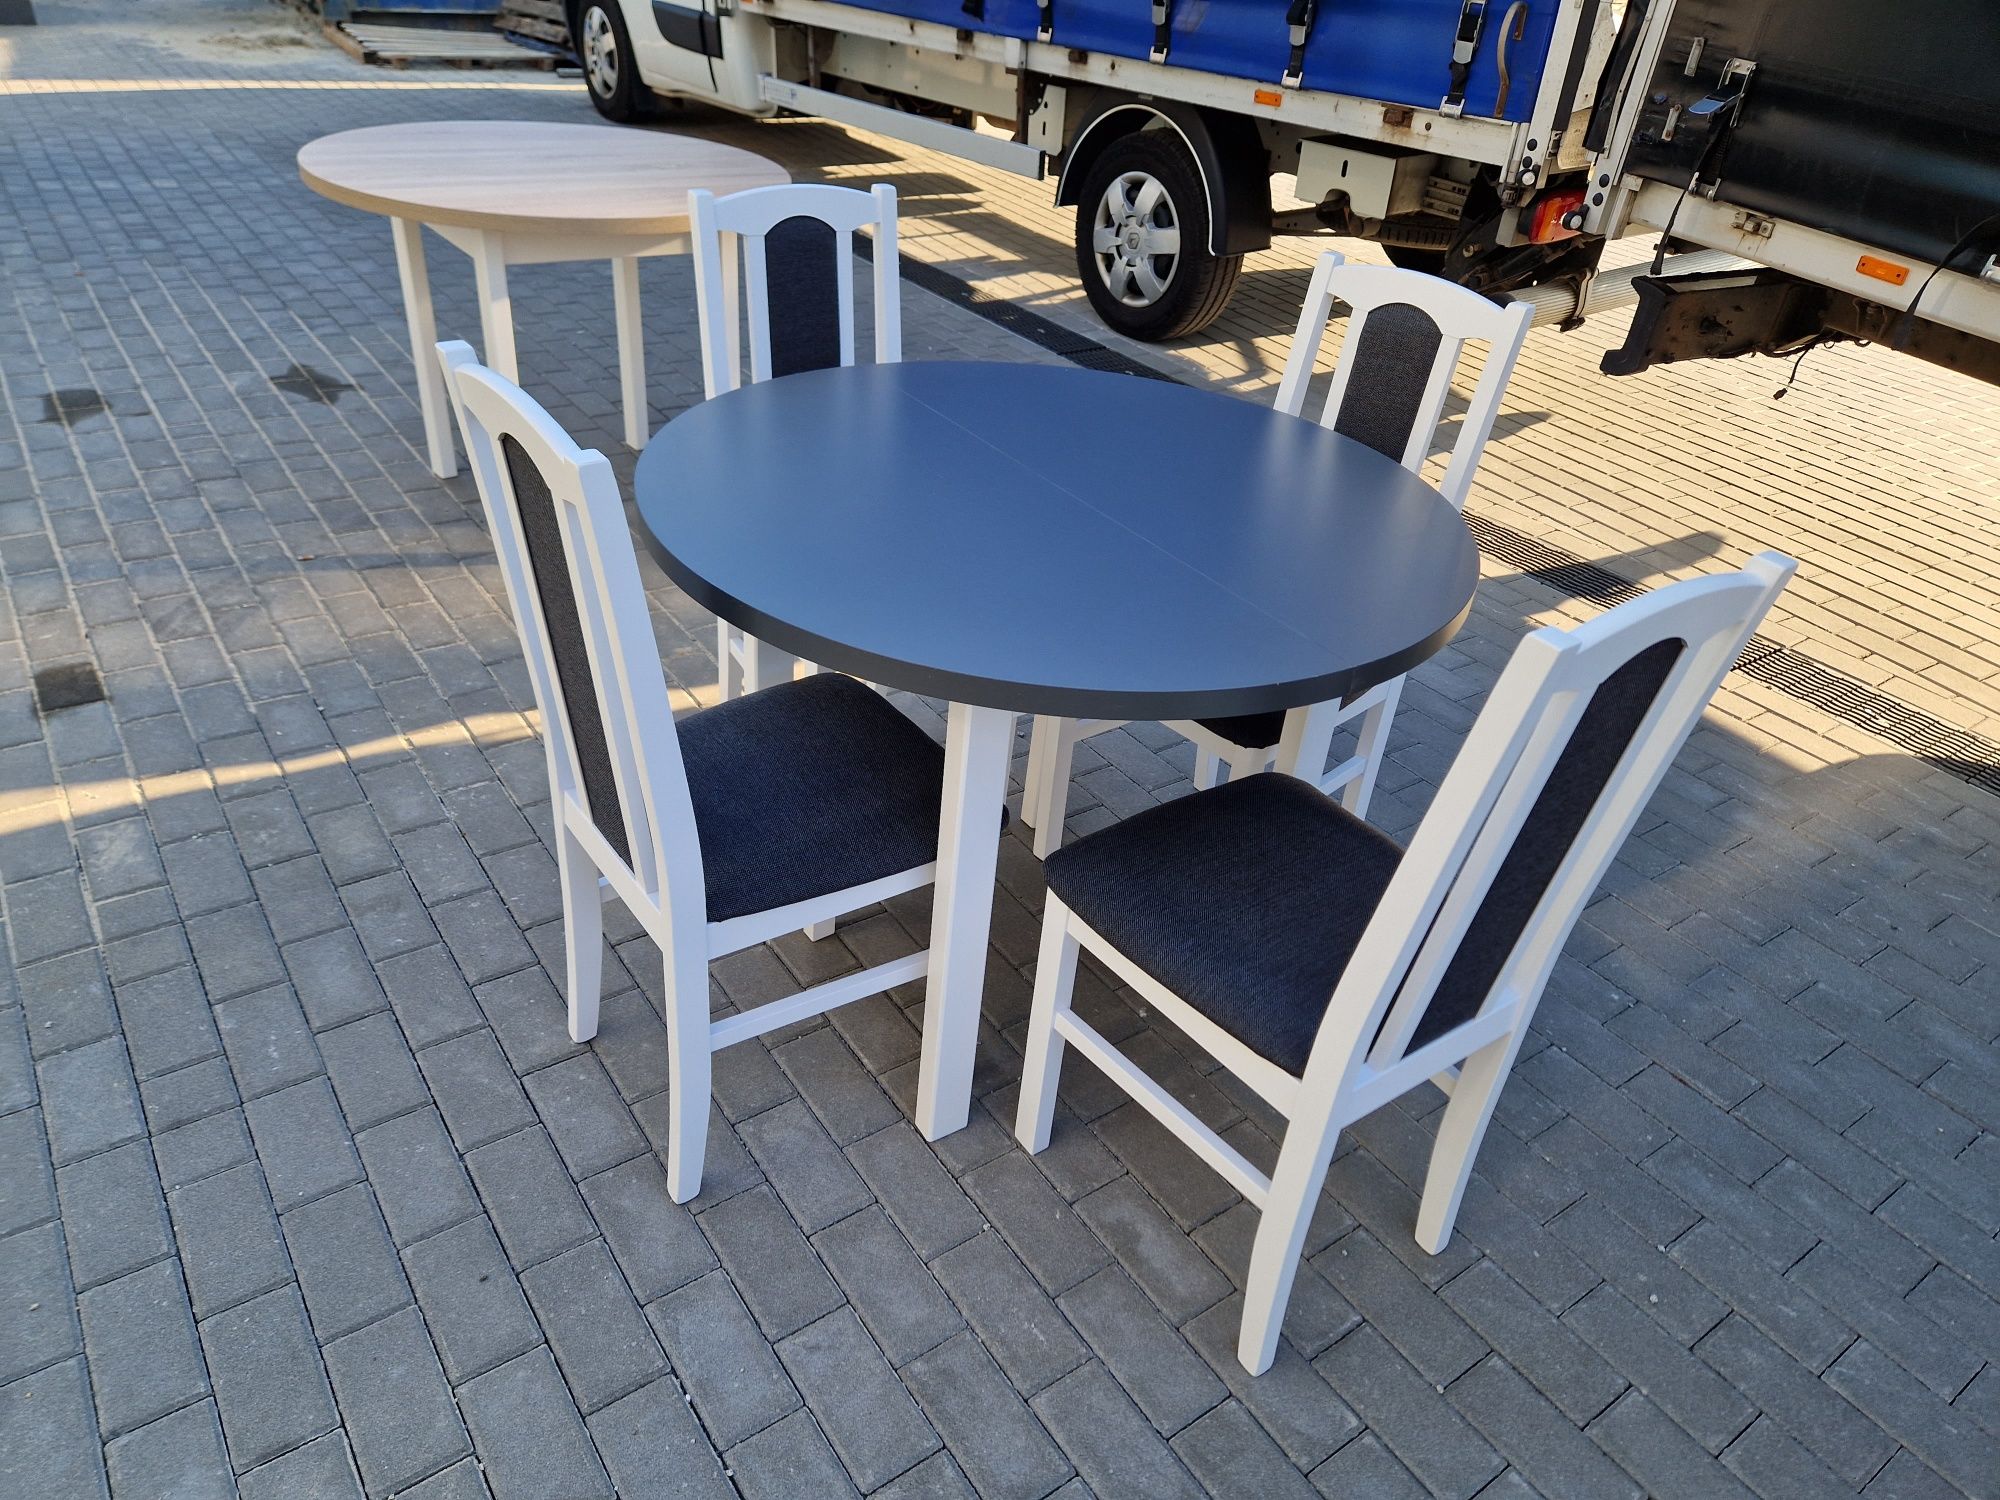 Nowe: Stół okrągły + 4 krzesła, bialy/grafit + grafit , dostawa PL